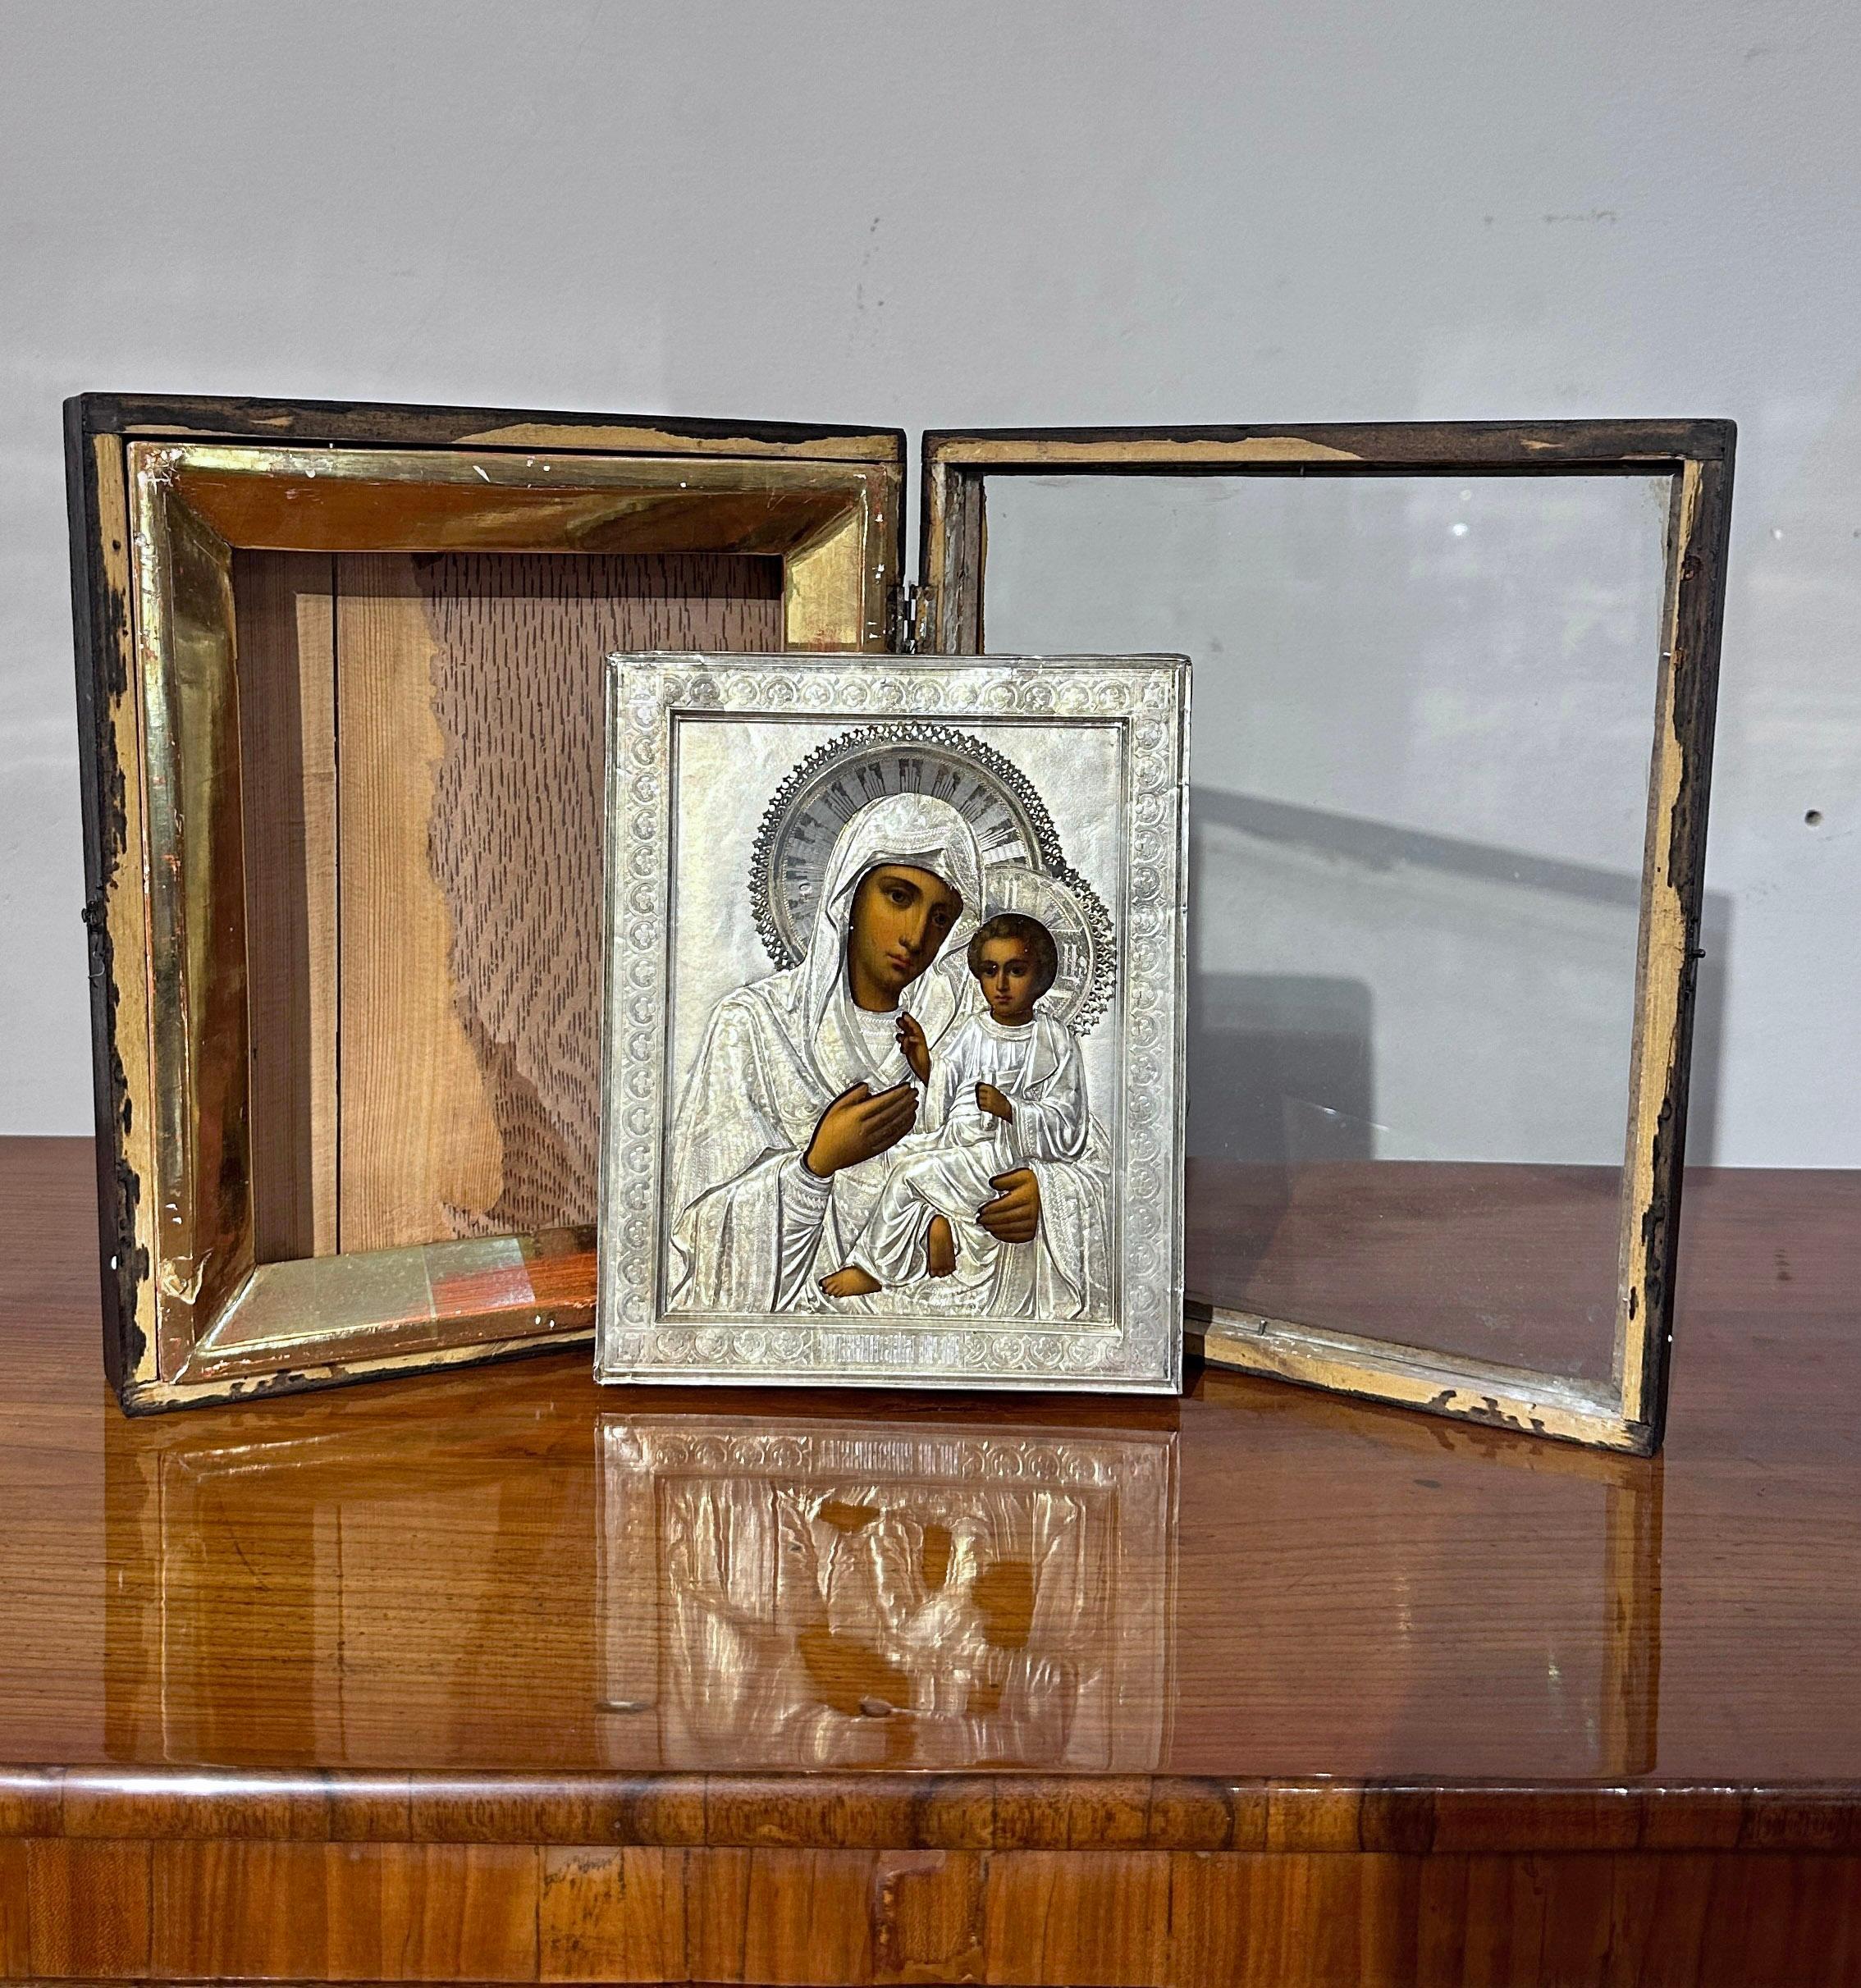 Belle icône de voyage russe peinte à l'huile sur une tablette en bois, avec une lancette en argent raffinée. La Vierge et l'enfant sont représentés avec beaucoup de talent, selon le style traditionnel des icônes orthodoxes. Leurs vêtements et leur